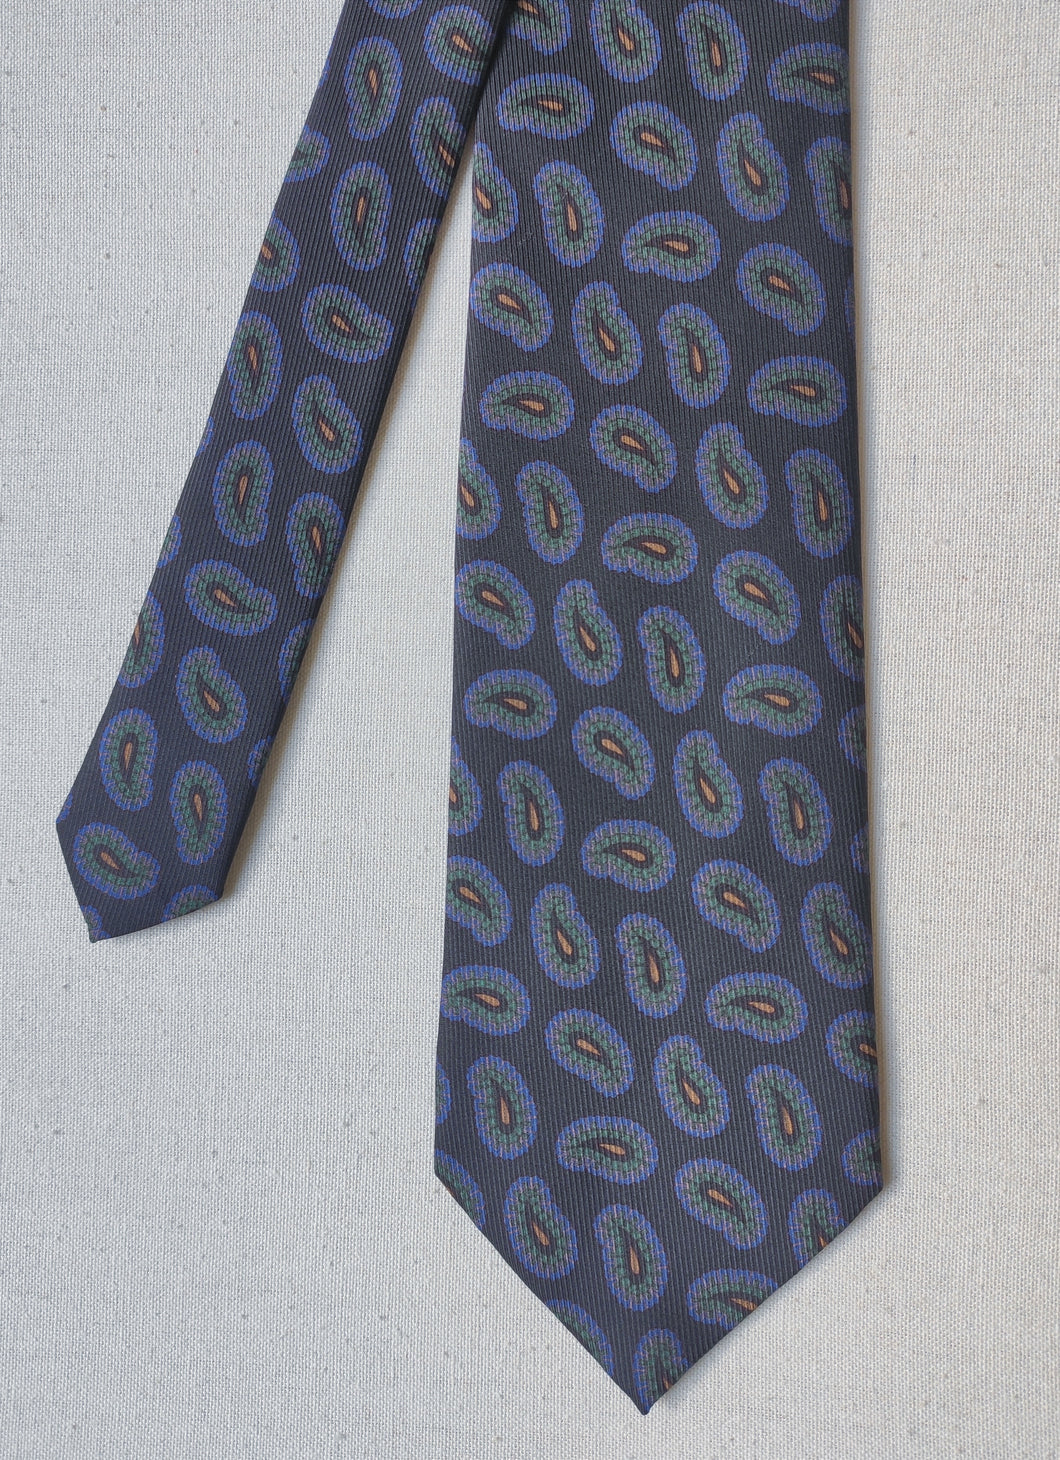 Ricchetti Parma cravate grise à motif paisley en soie Made in Italy